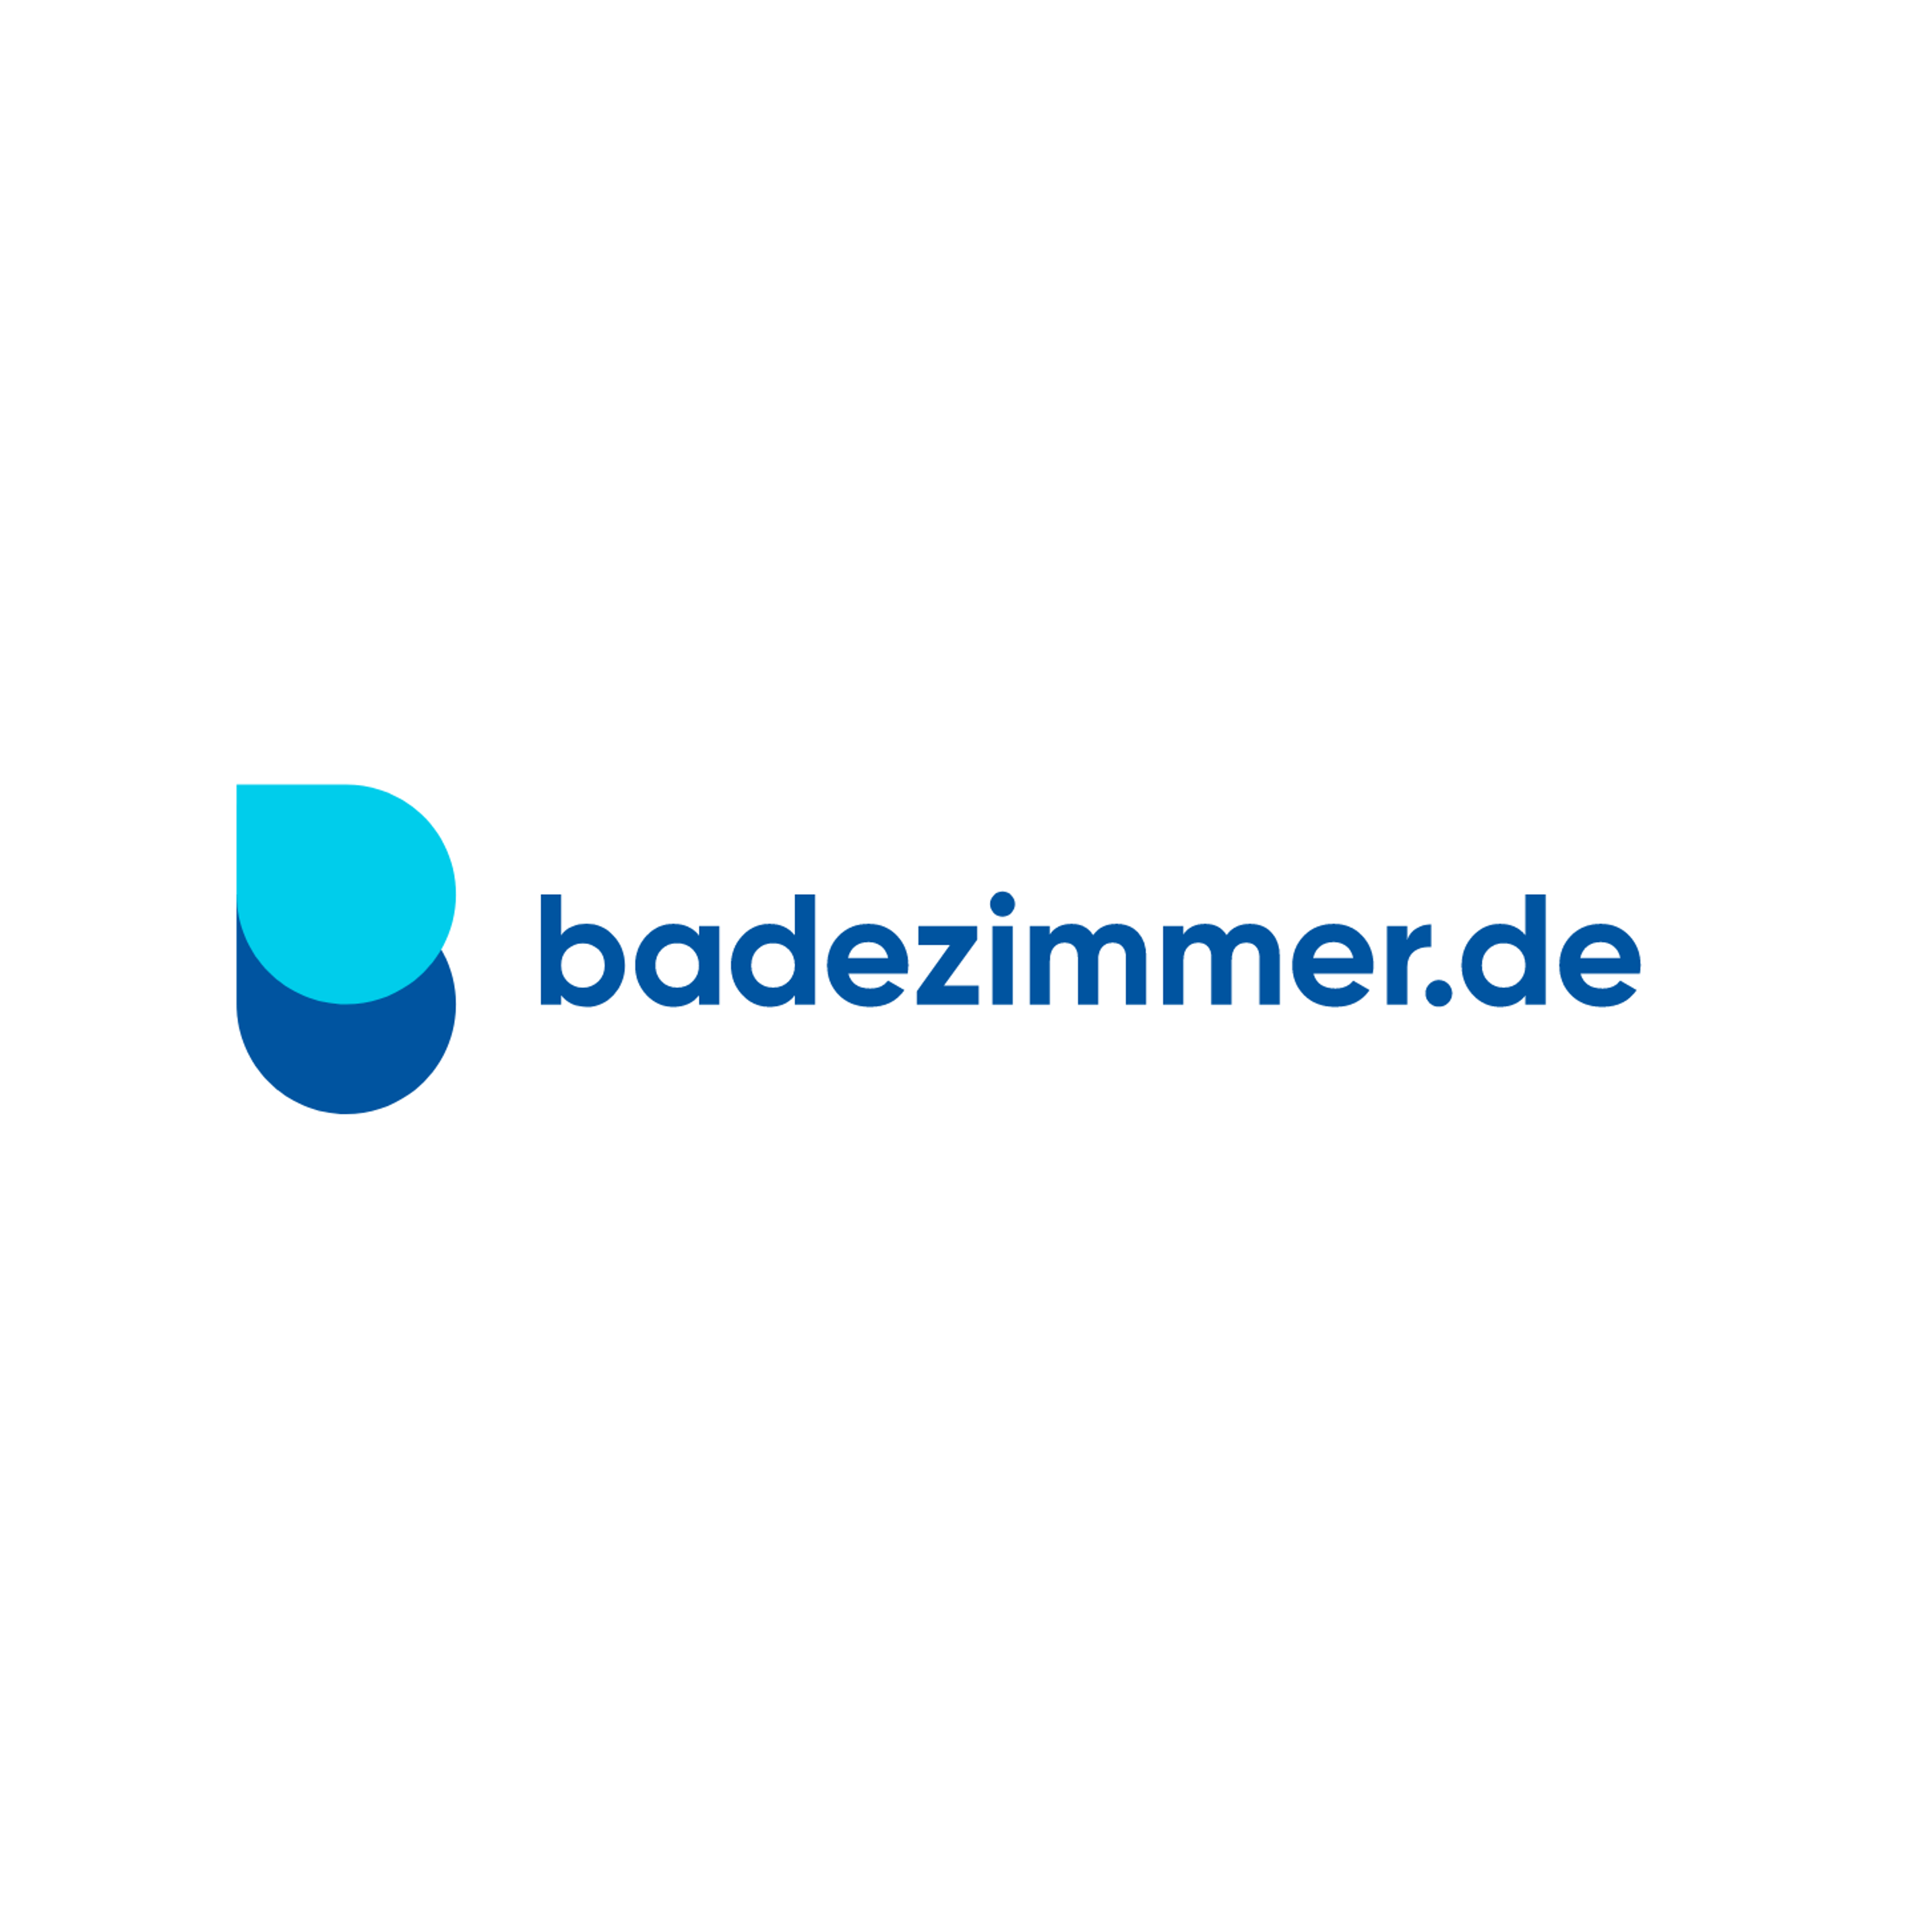 badezimmer.de Badausstellung Dortmund - ELMER in Dortmund - Logo